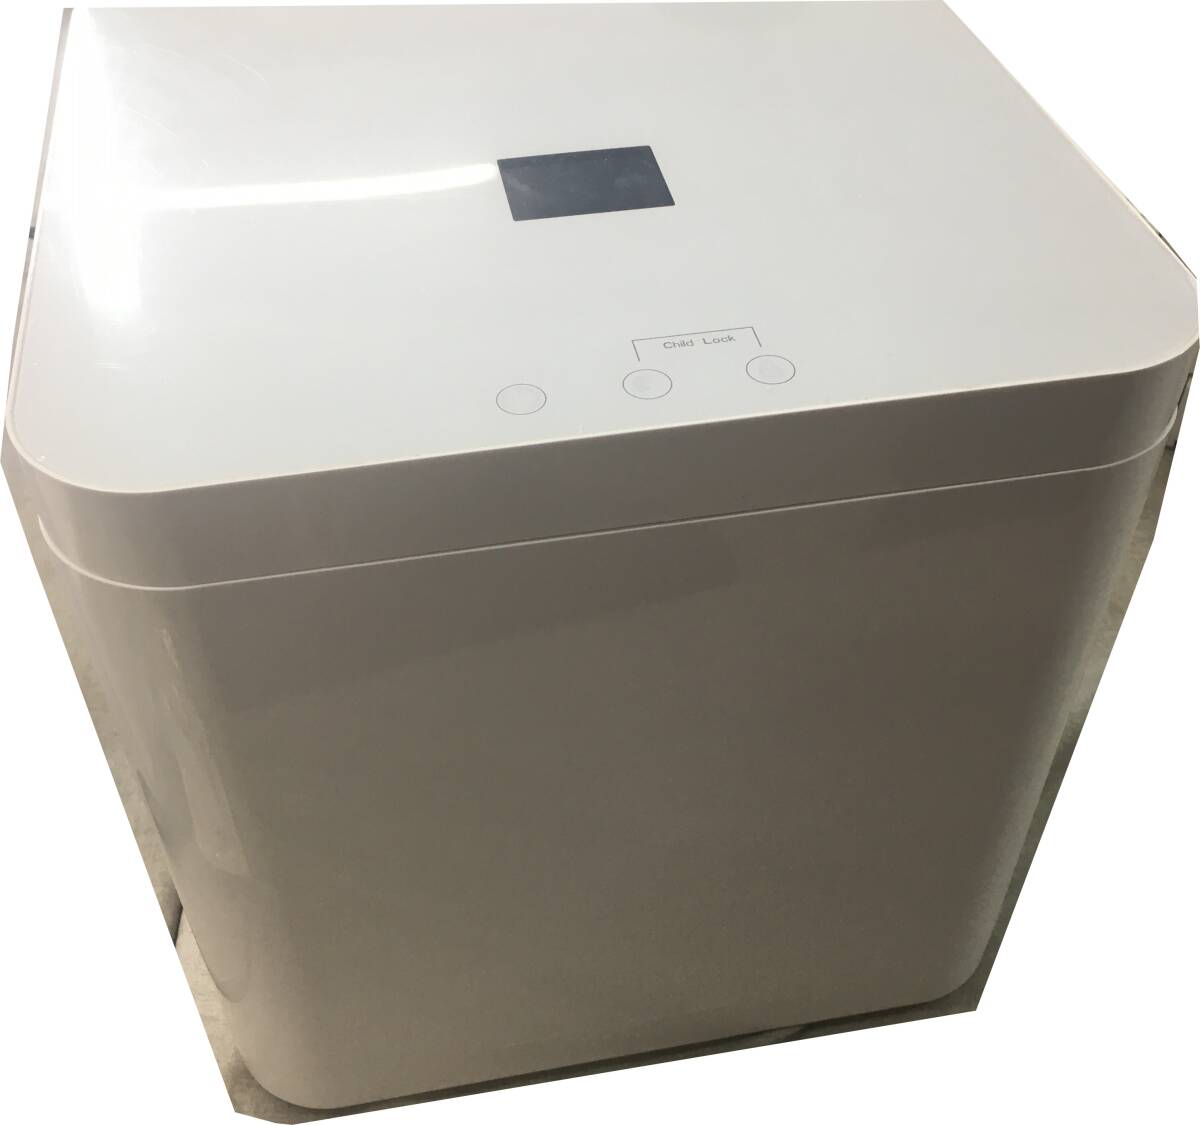  не использовался электрический кухня проигрыватель старт Try лезвие мусор отделка контейнер нет запах тихий звук AC110V для бытового использования 